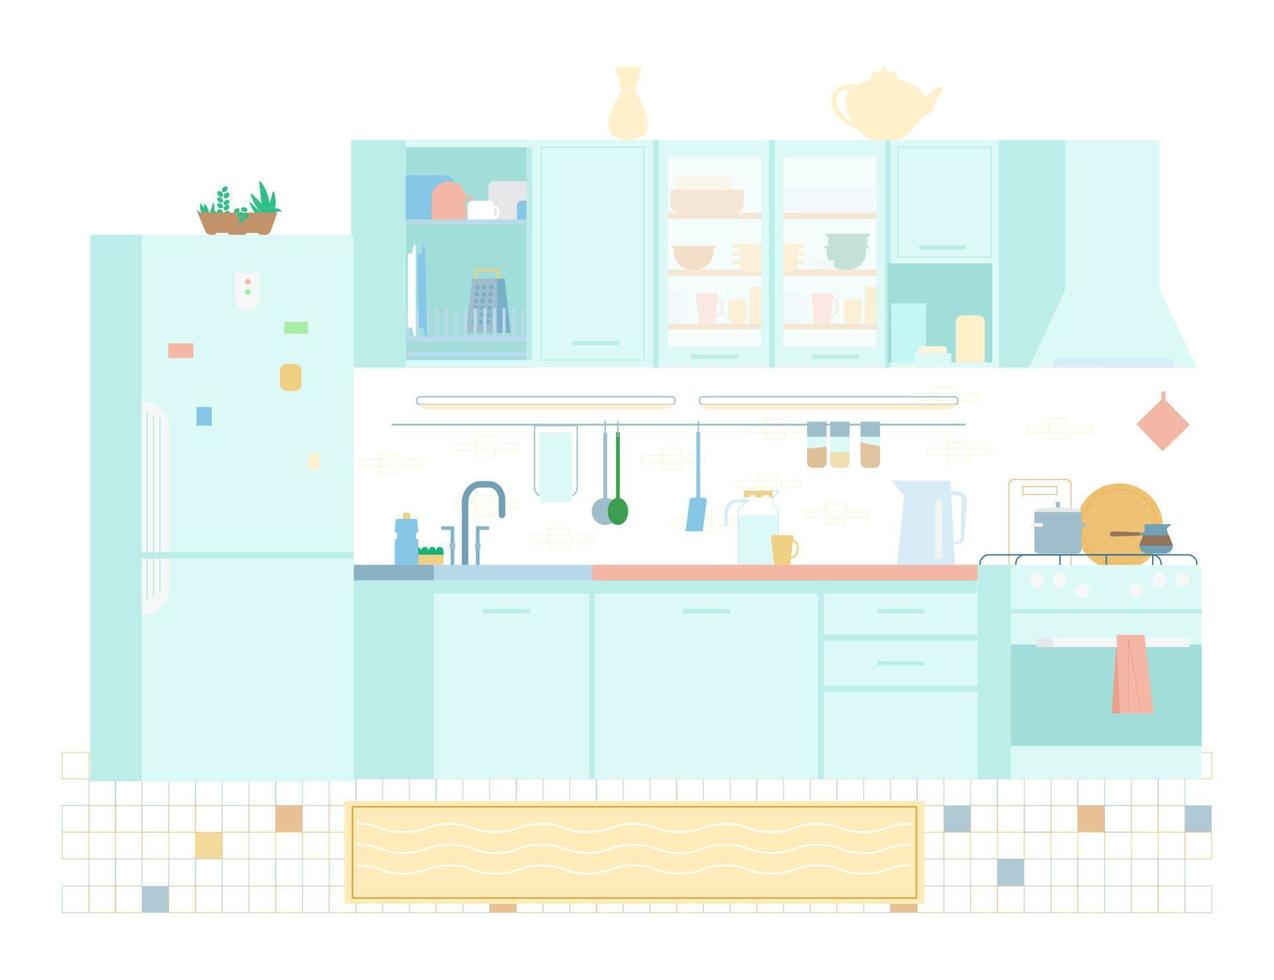 intérieur de cuisine en illustration vectorielle plane de couleurs pastel. meuble, cuisinière, ustensiles, réfrigérateur, étagères, évier, égouttoir. vecteur